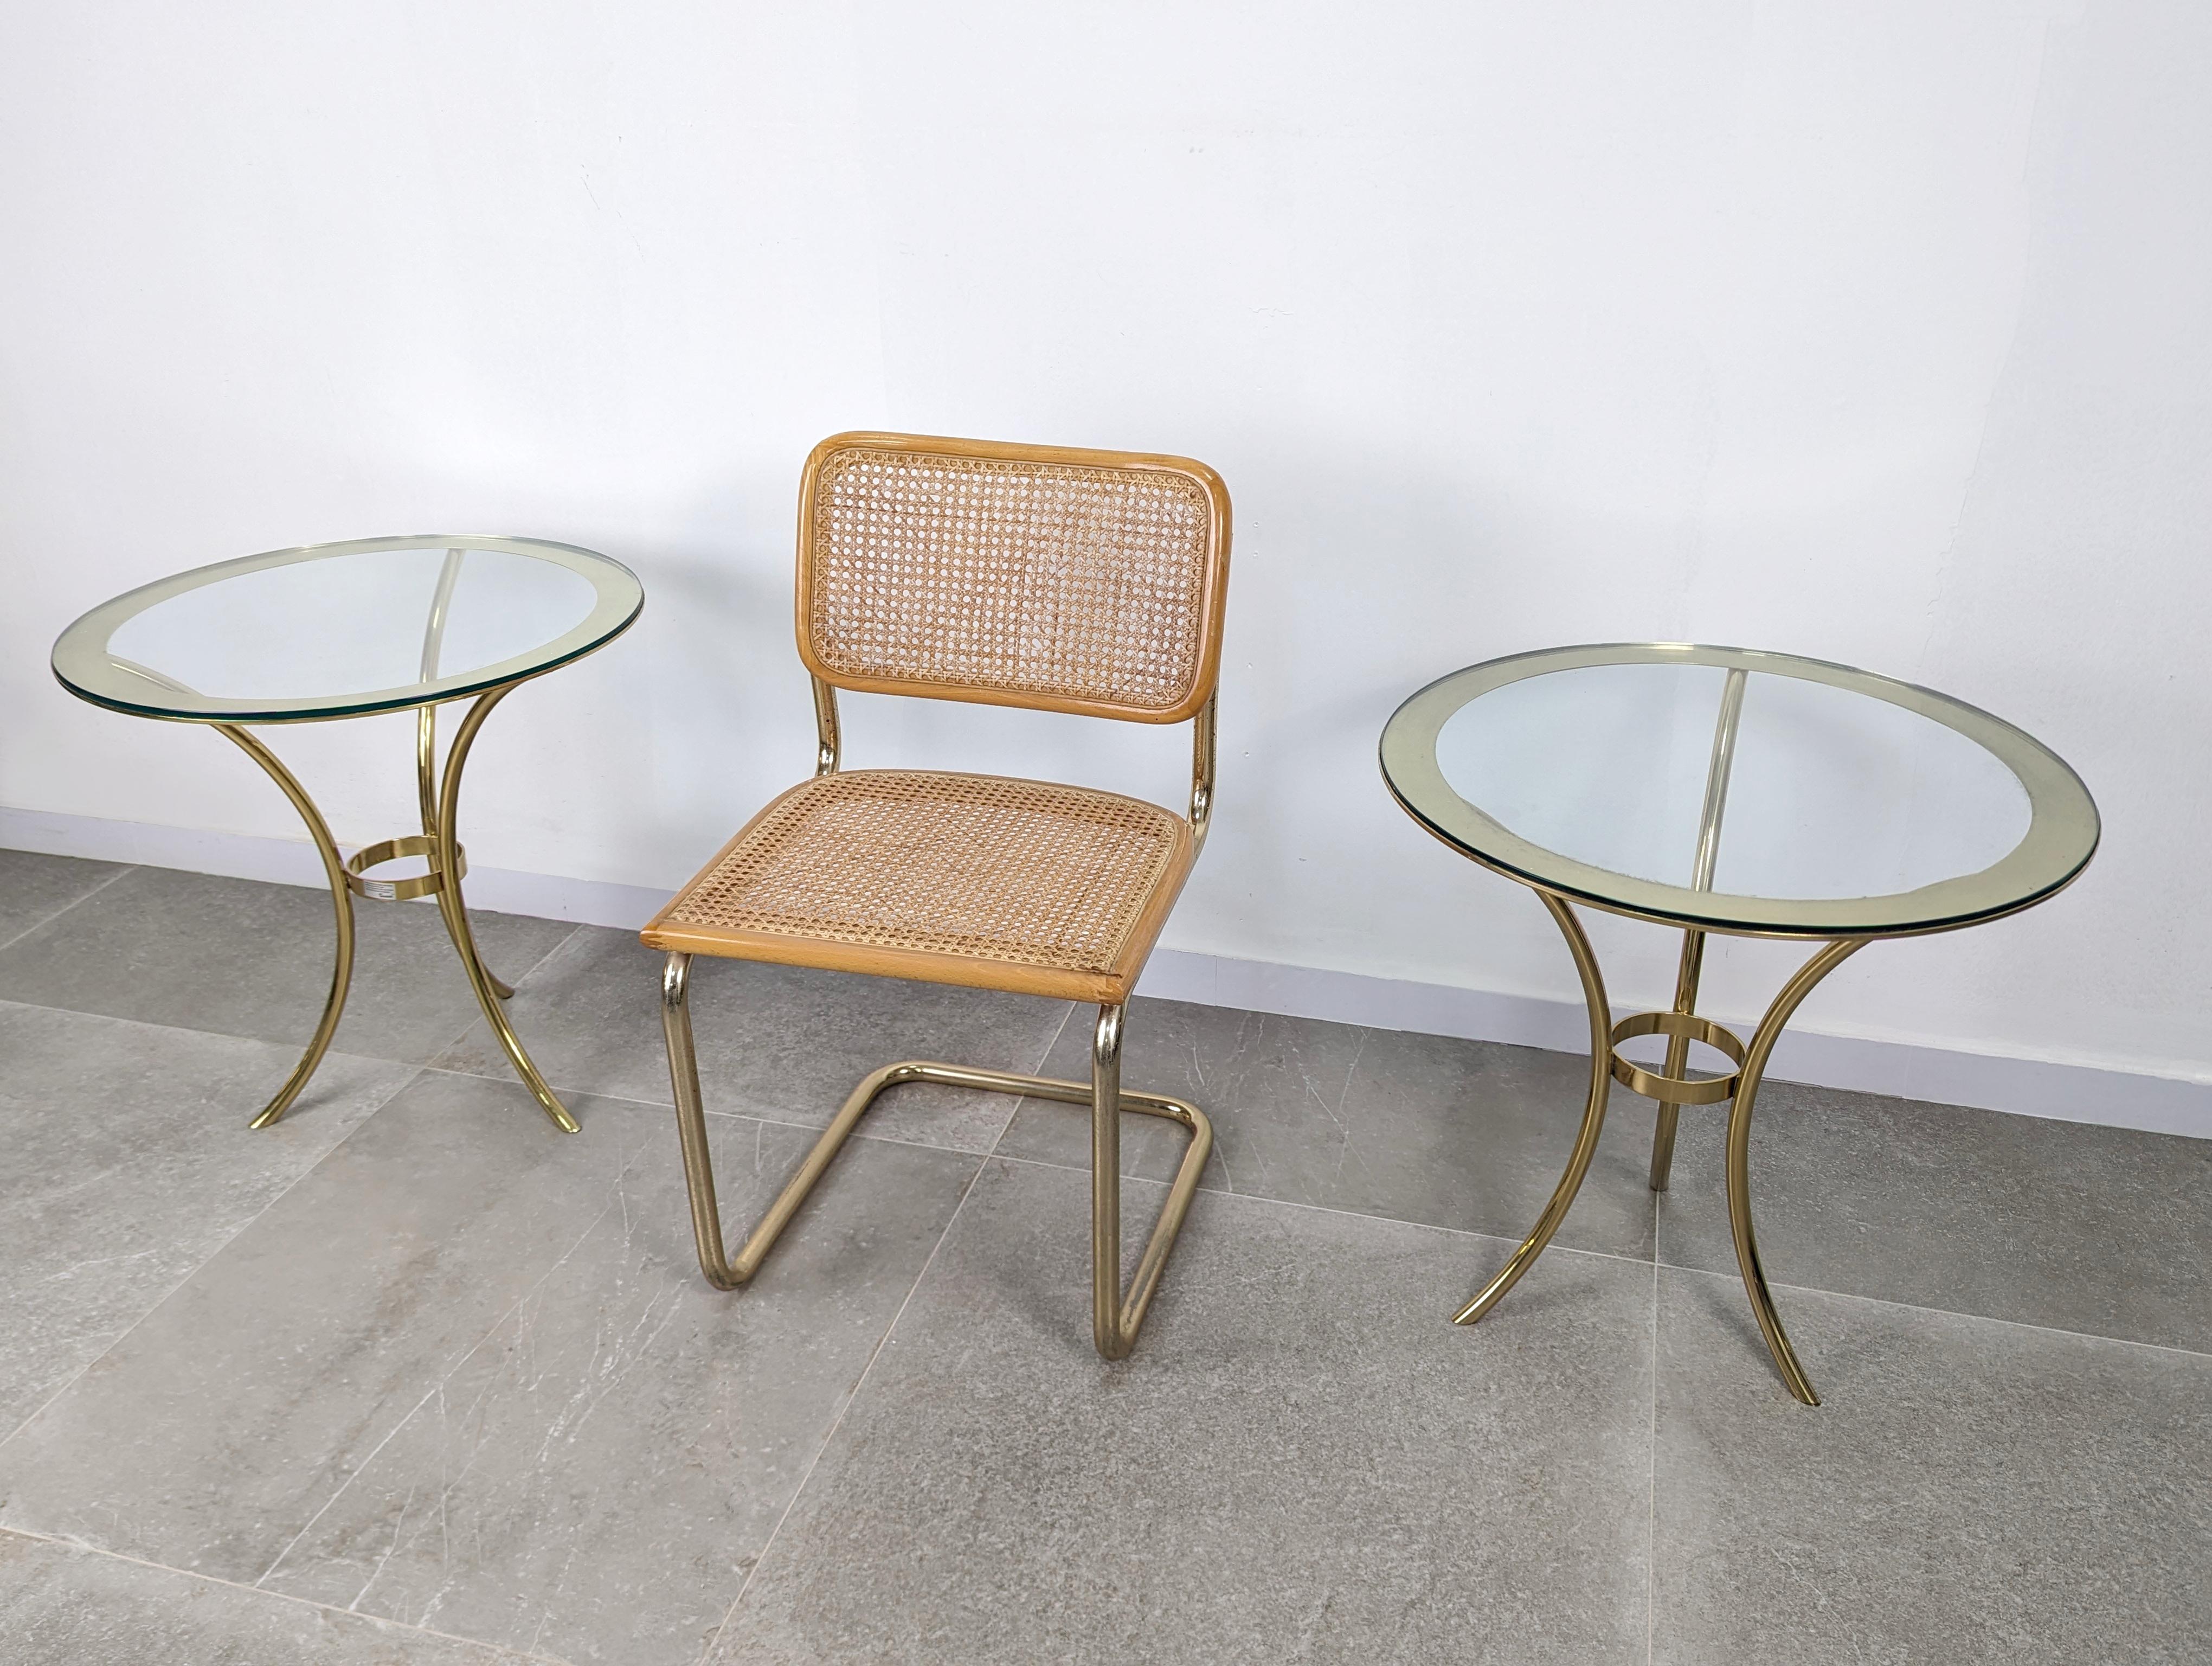 Elégante table d'appoint ronde de la luxueuse marque A.Profiles avec verre serti présentant un magnifique profil circulaire doré sur sa surface. Deux unités disponibles.